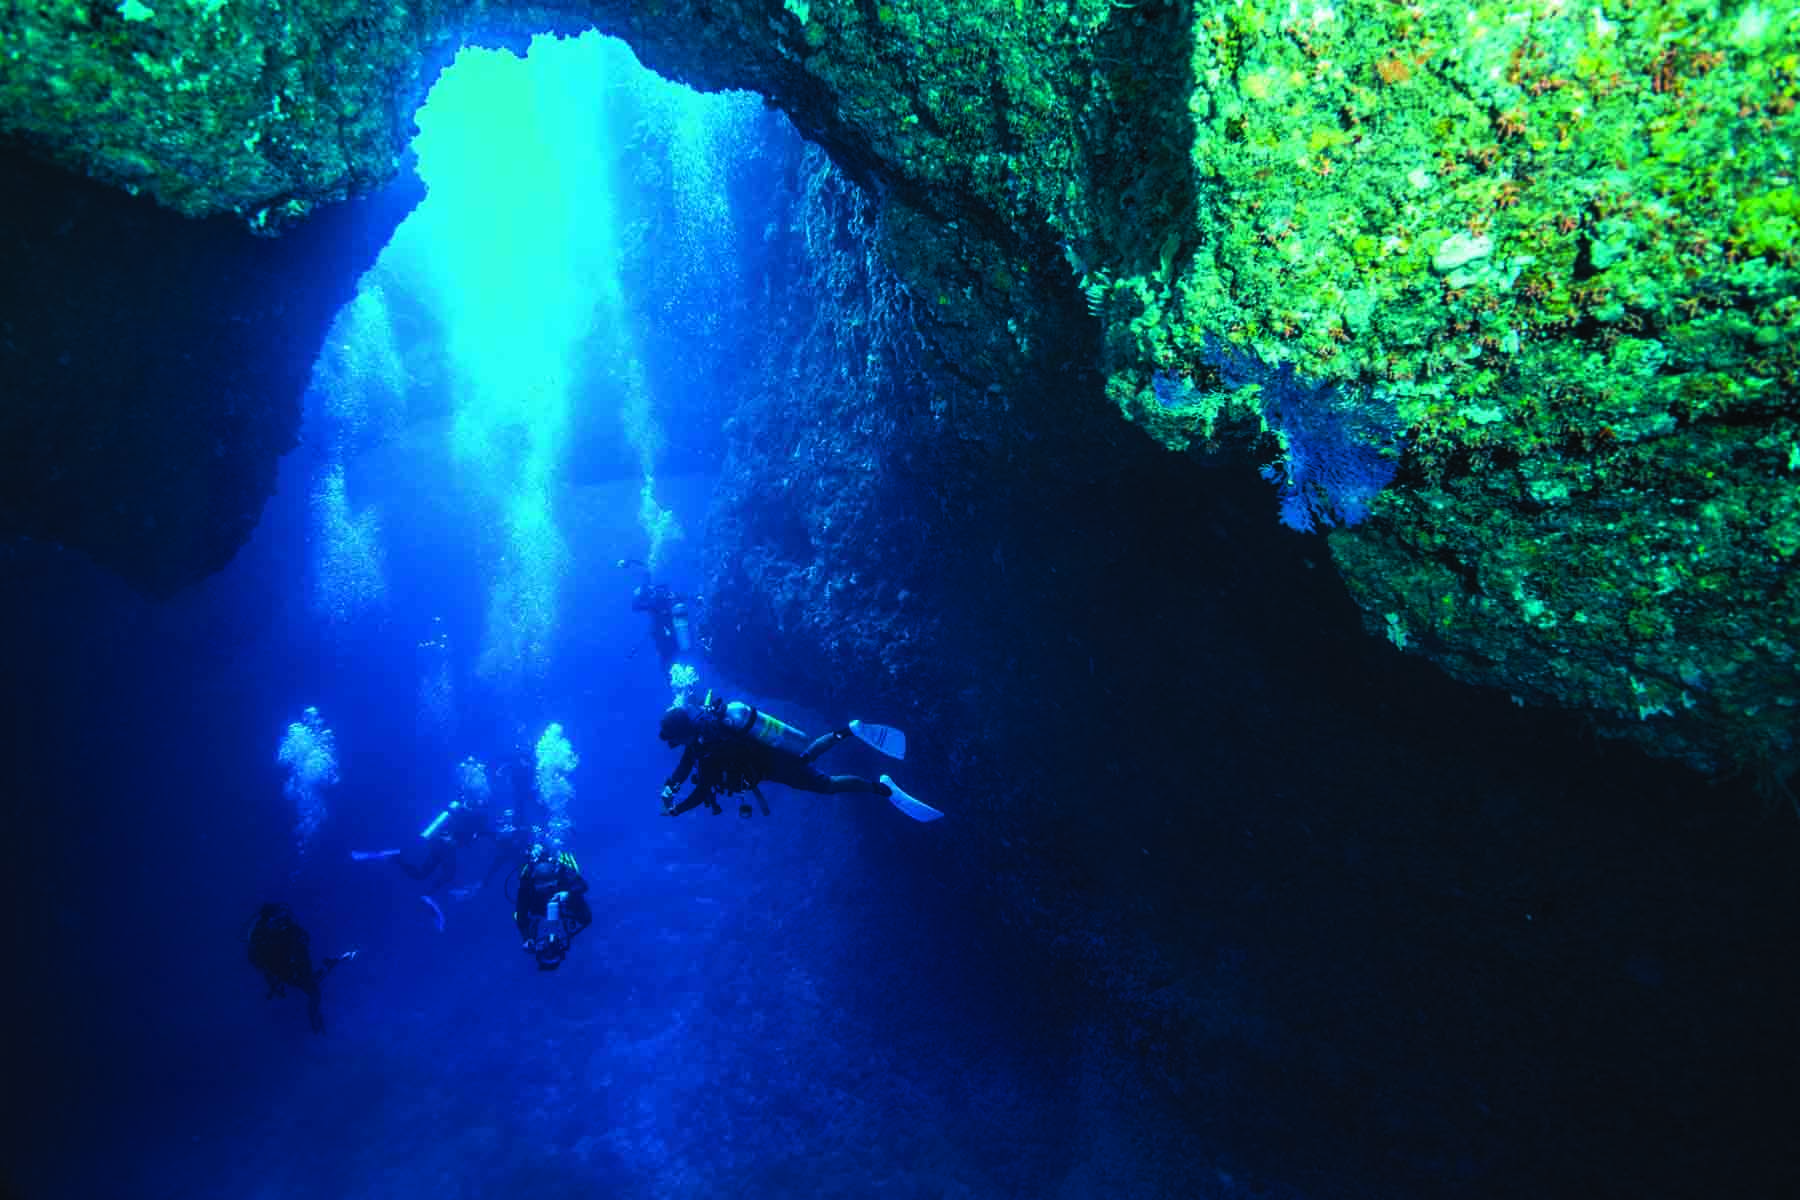 Cavernas marinhas, recifes de corais, navios naufragados e grandes animais marinhos são temas explorados nas panorâmicas subaquáticas